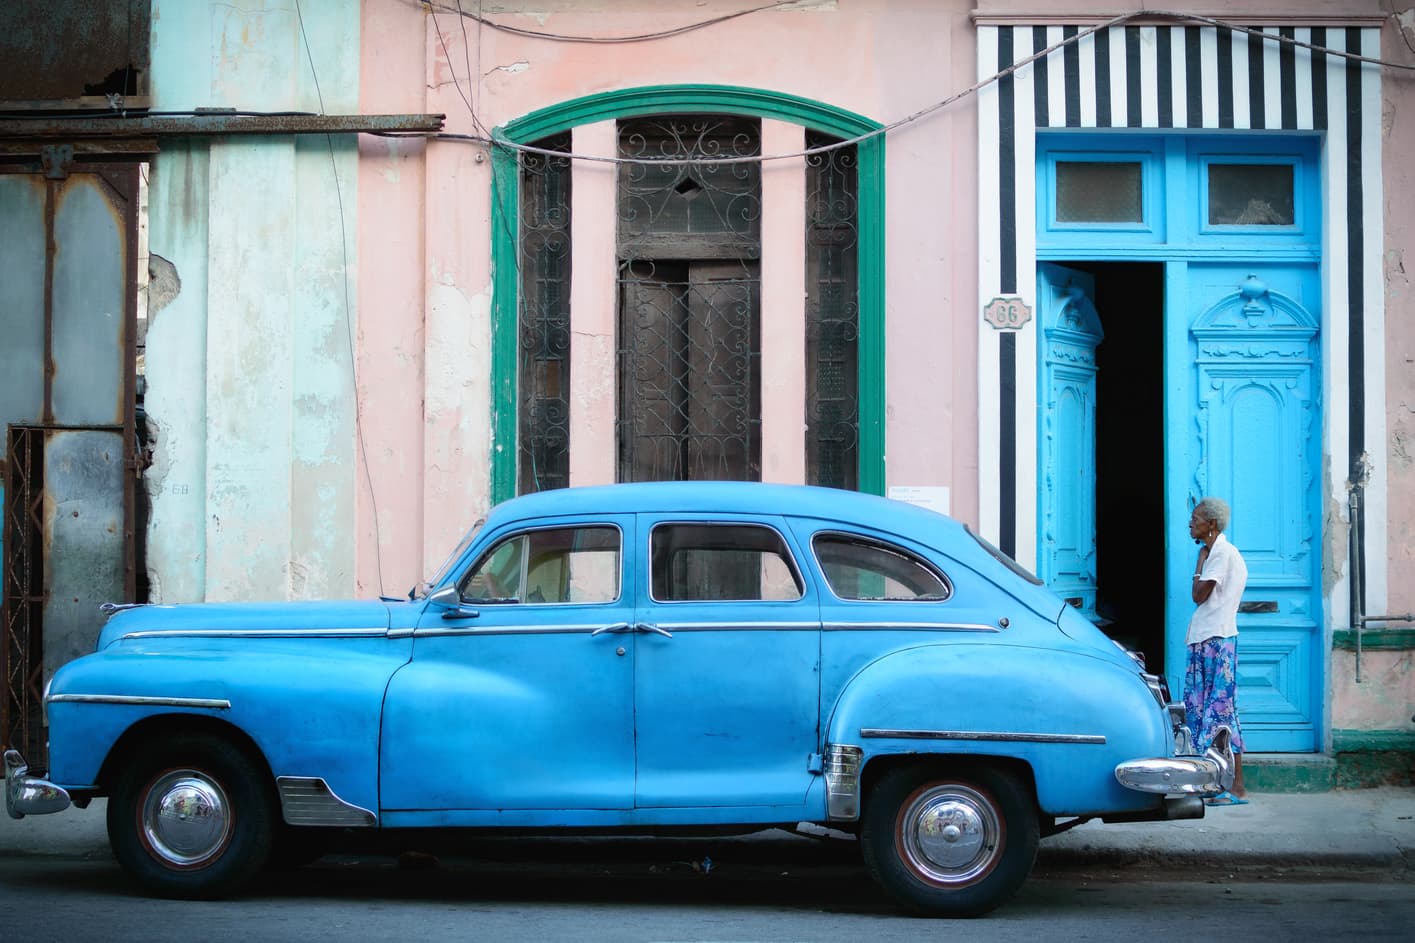 Fachadas coloniales de Cuba, que hay que ver en Cuba